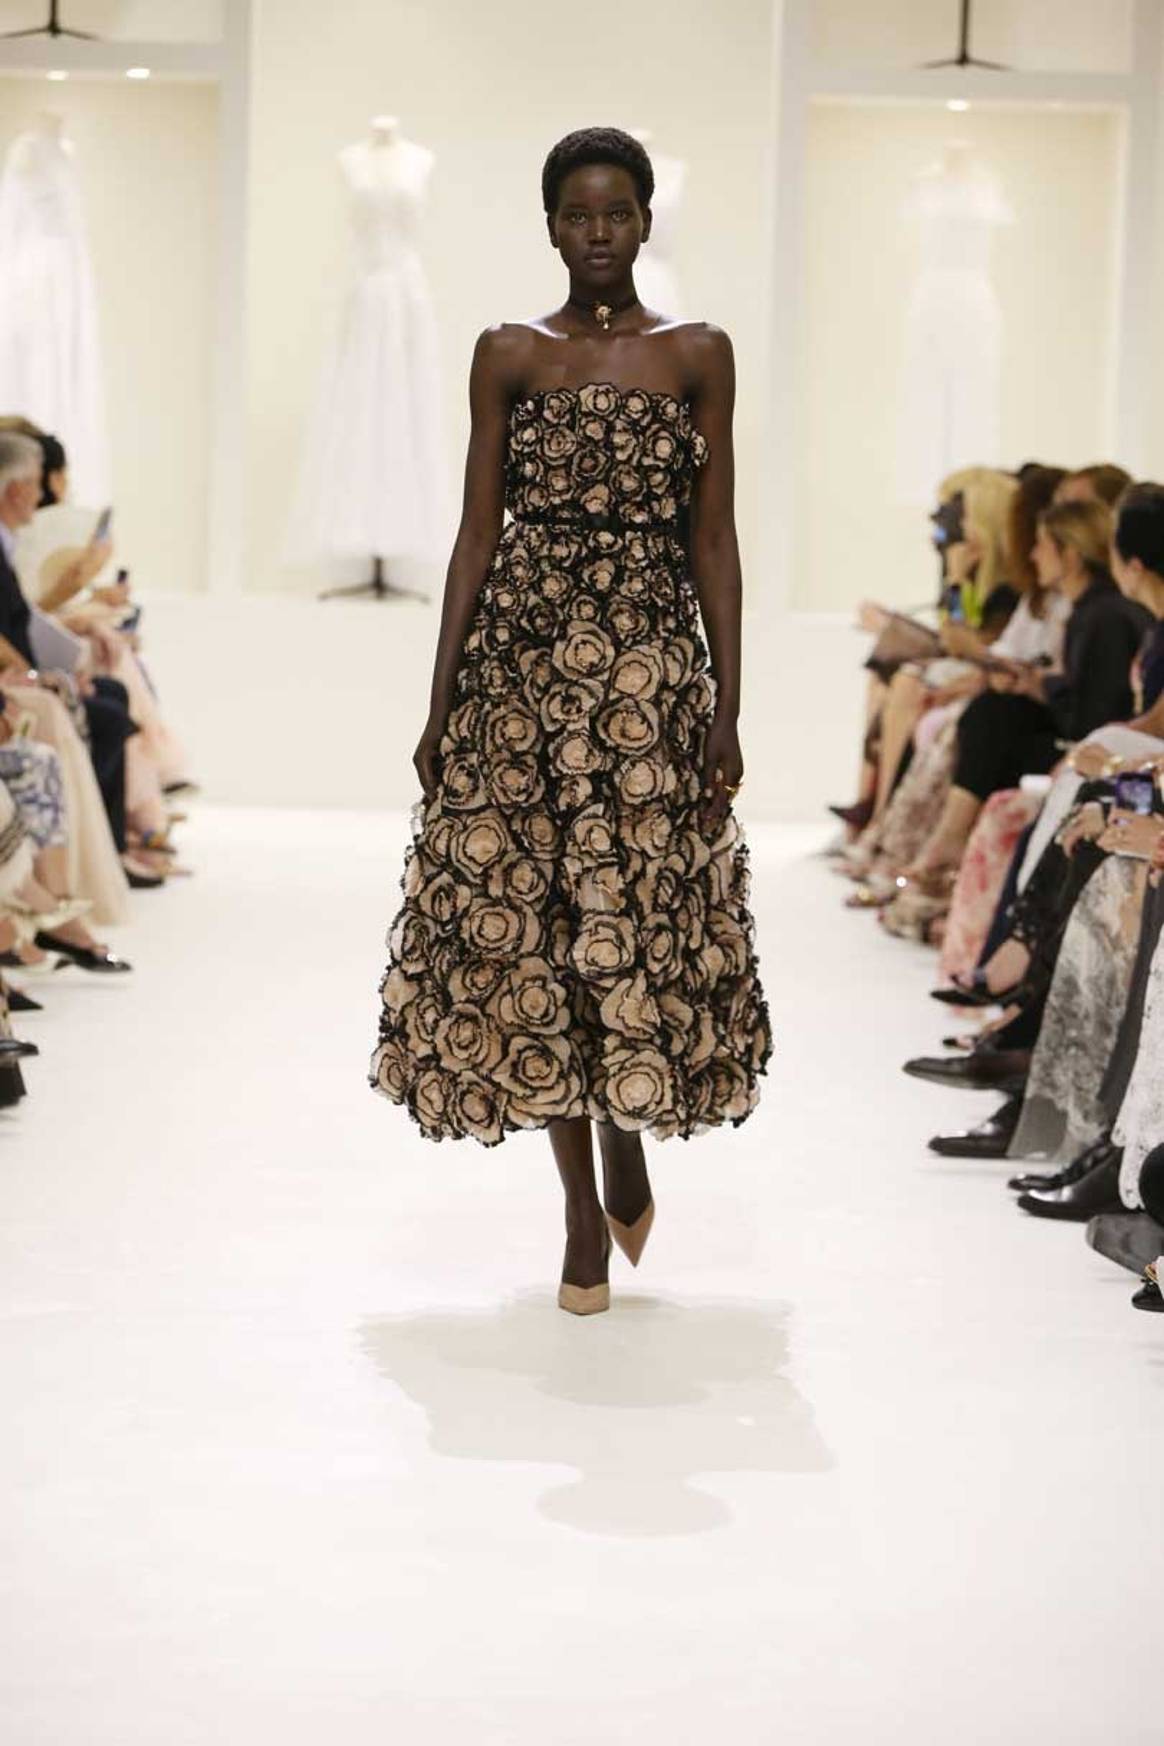 Dior reivindica el saber hacer de la alta costura, "invisible" en Instagram